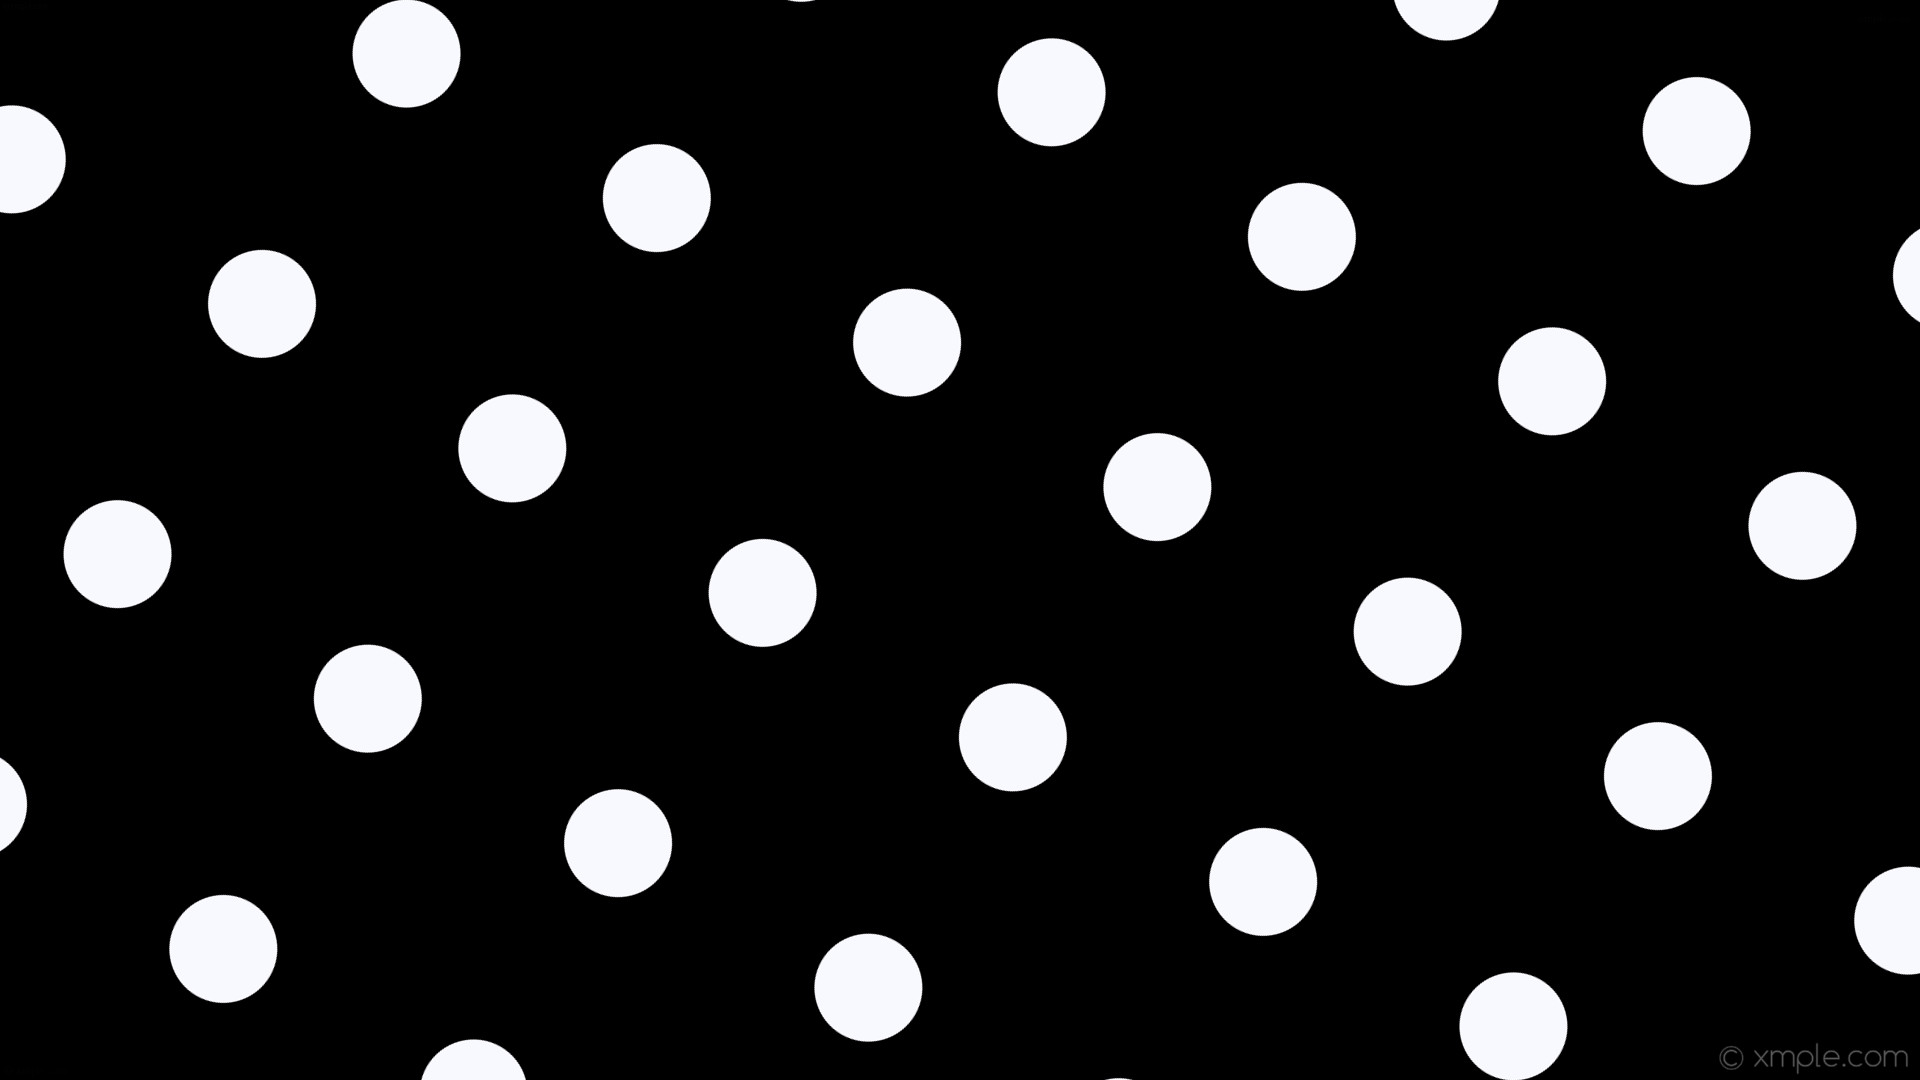 1920x1080 wallpaper white spots black polka dots ghost white #000000 #f8f8ff 240Â°  108px 289px